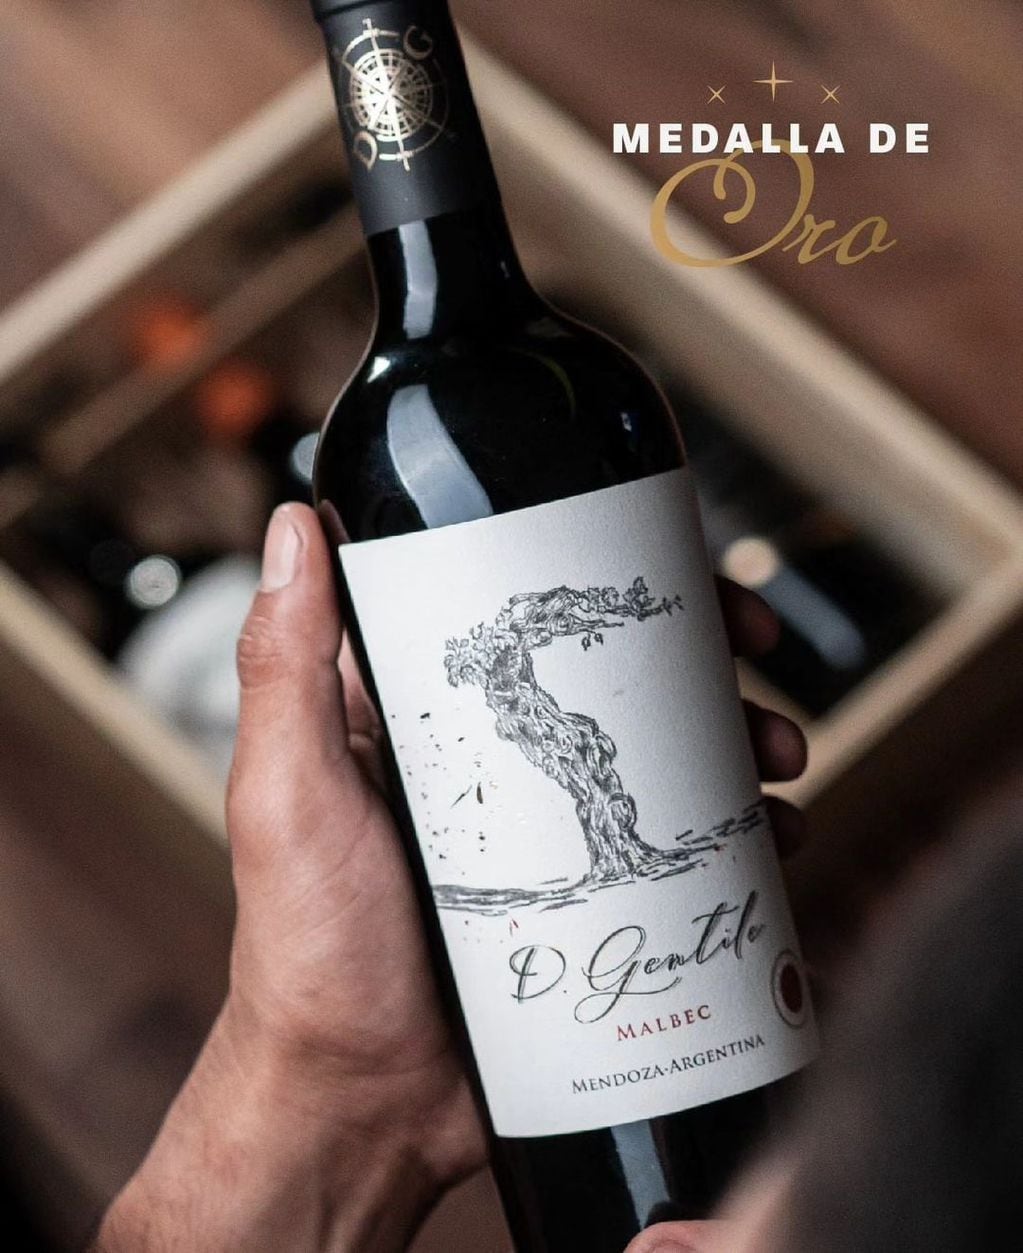 Cava Gentile, ganador de Medalla de Oro en el Concurso Nacional de Vinos Guarda14. - Gentileza